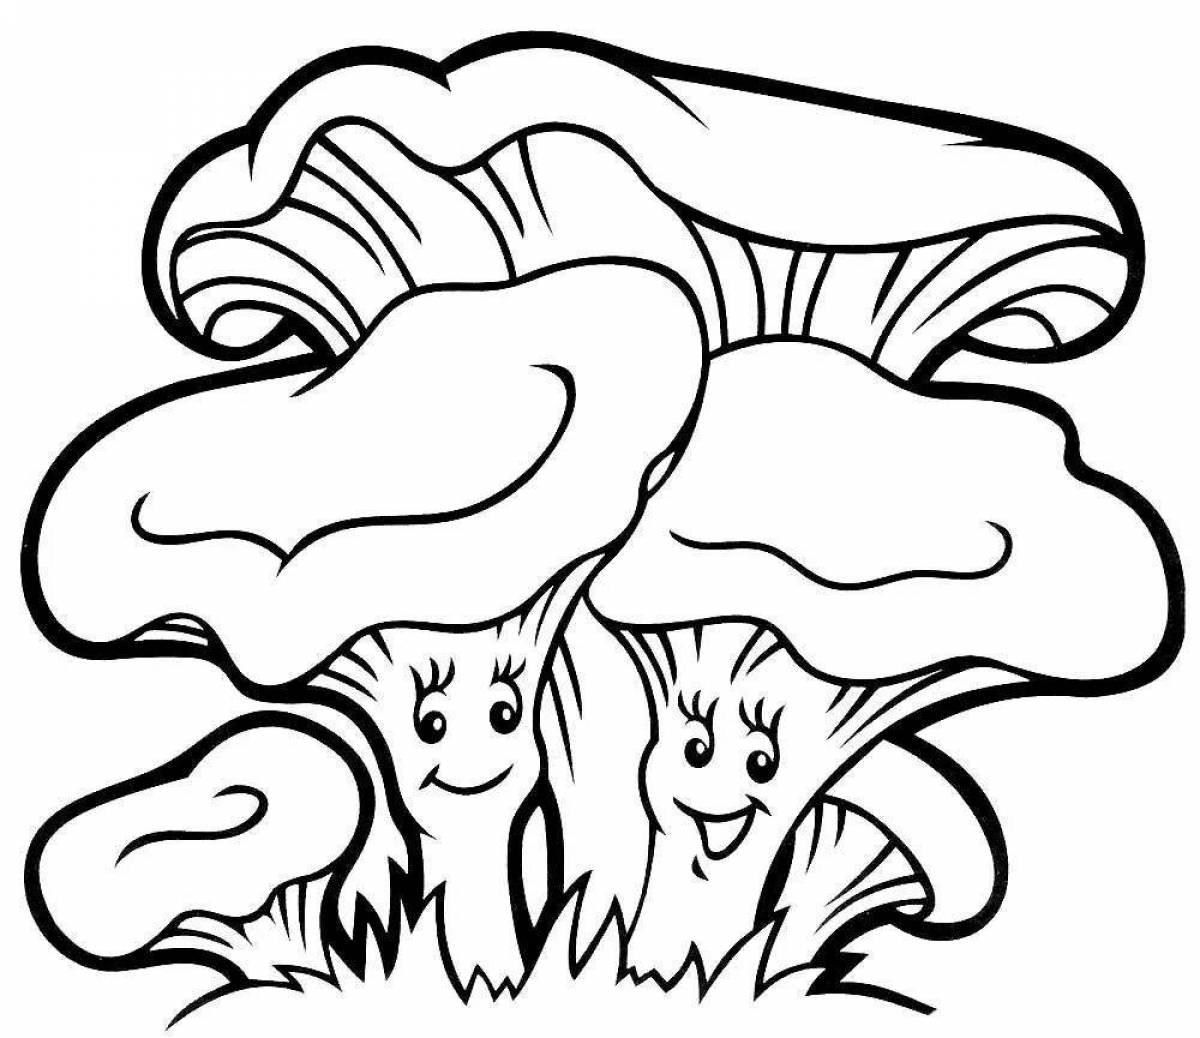 Children's chanterelle mushroom #1